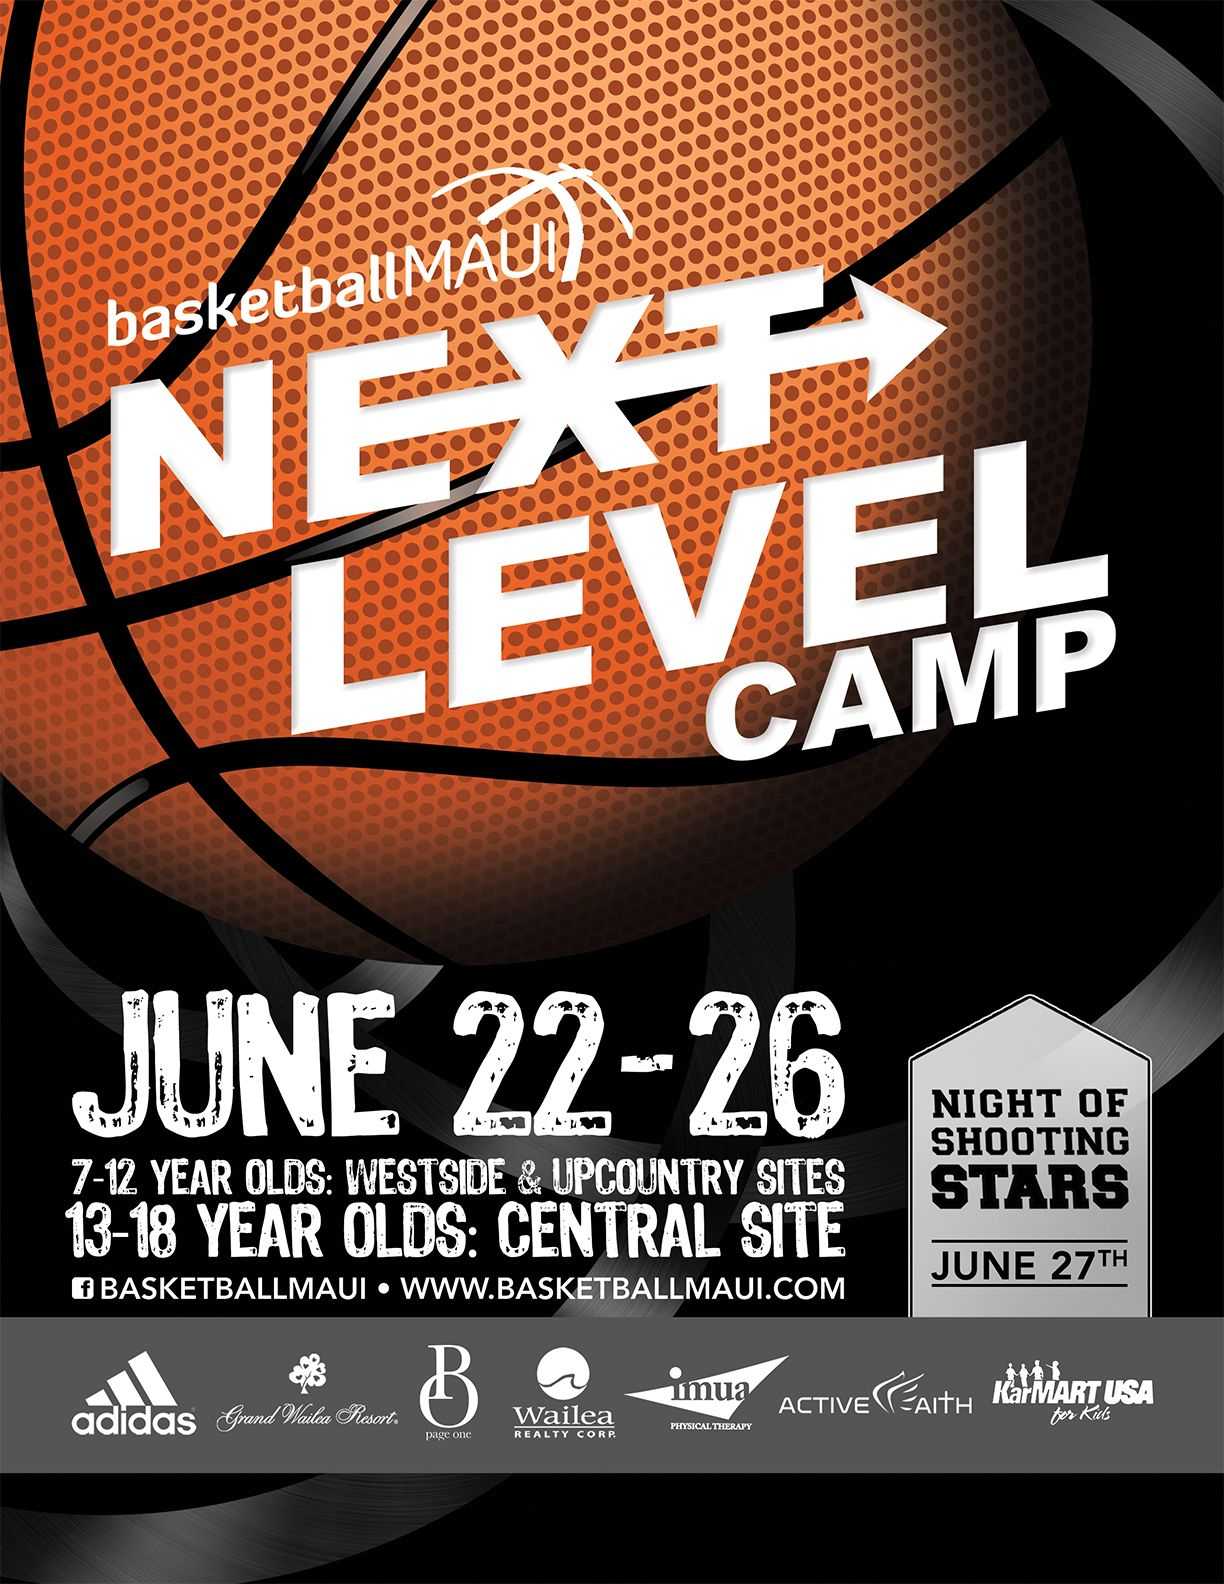 Flyer Design For Kids Basketball Camp. Designed For Basketball Camp Brochure Template